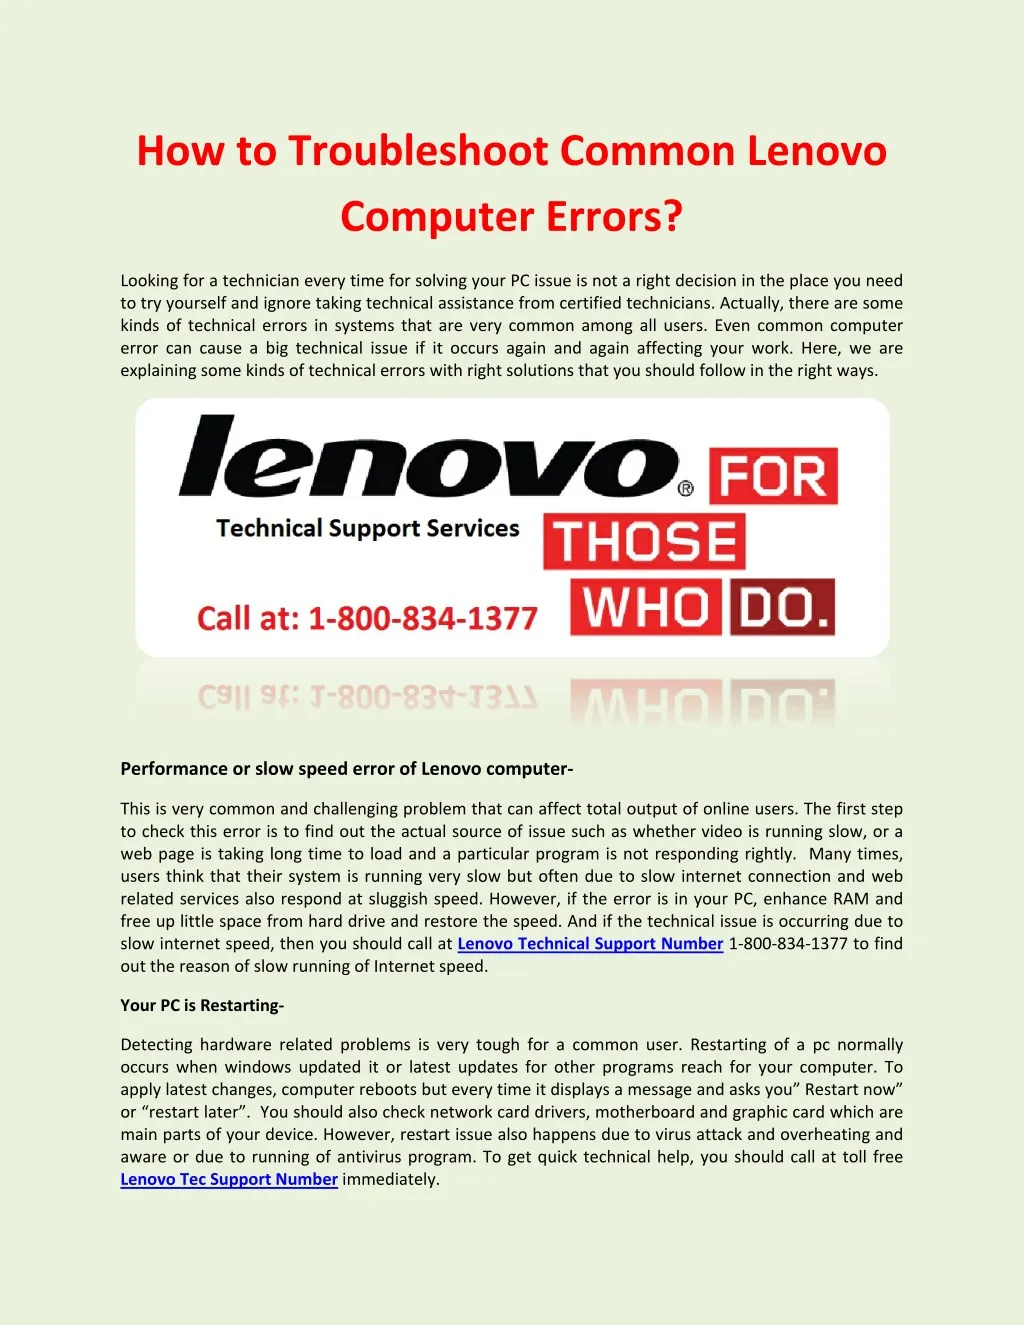 how to troubleshoot common lenovo computer errors